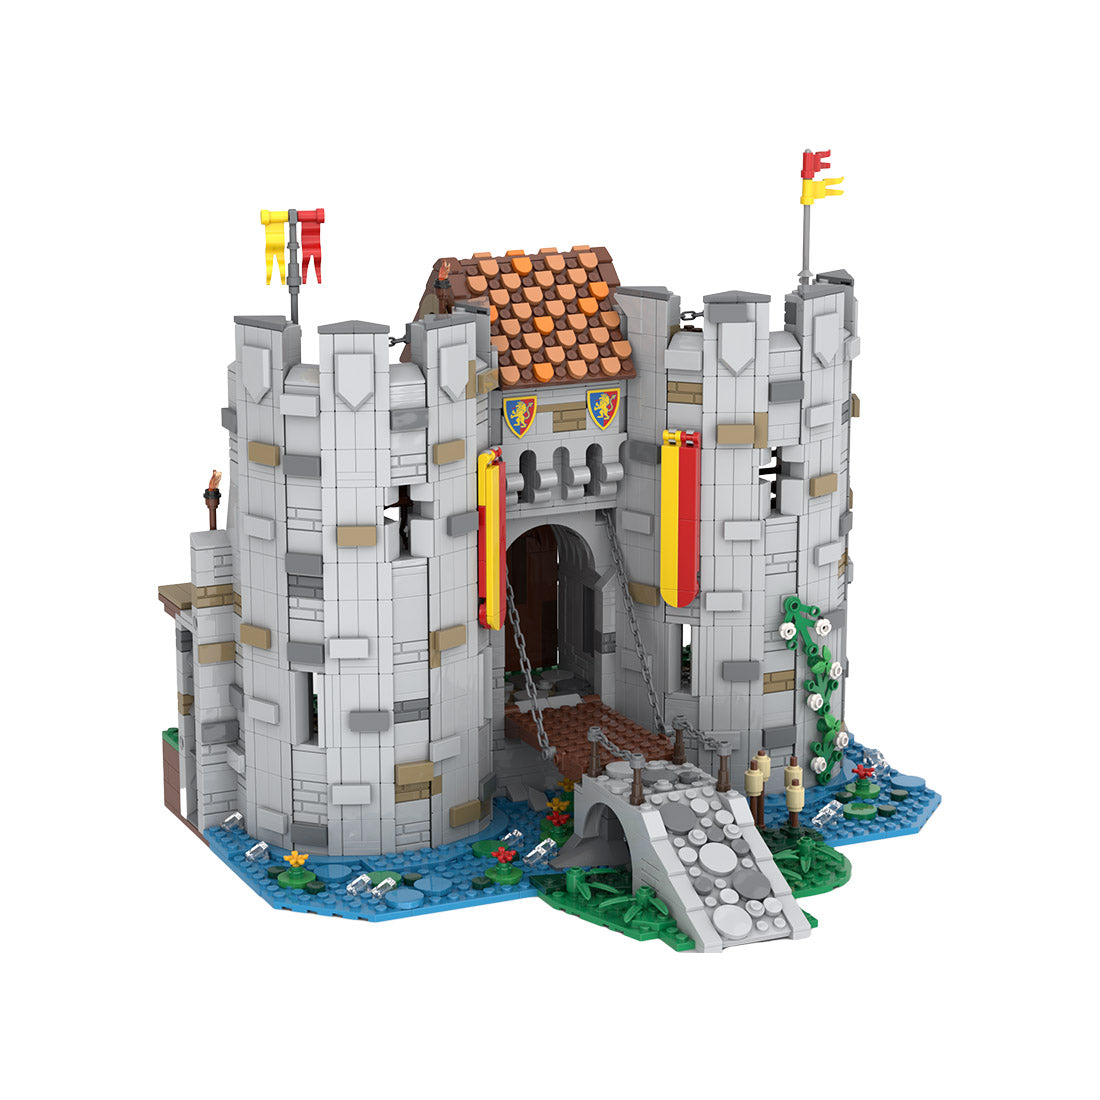 MOC-157507 The gate of Bricktenstein castle